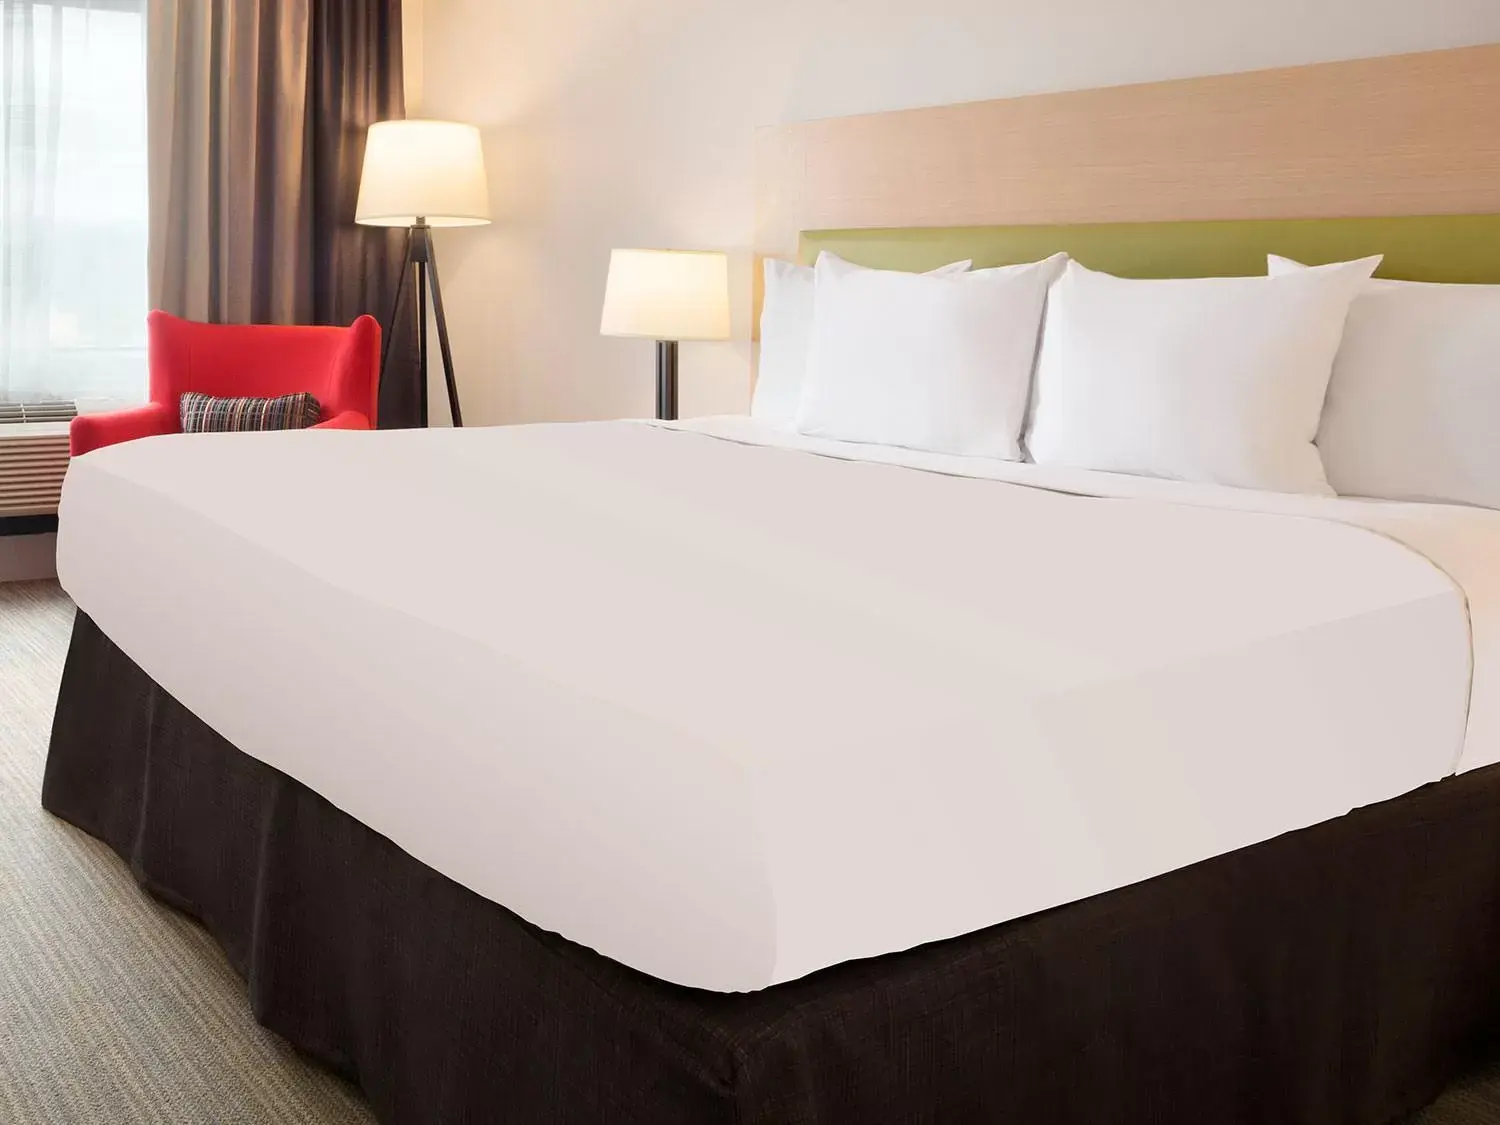 Bedroom, Bed in Country Inn & Suites by Radisson, Petersburg, VA